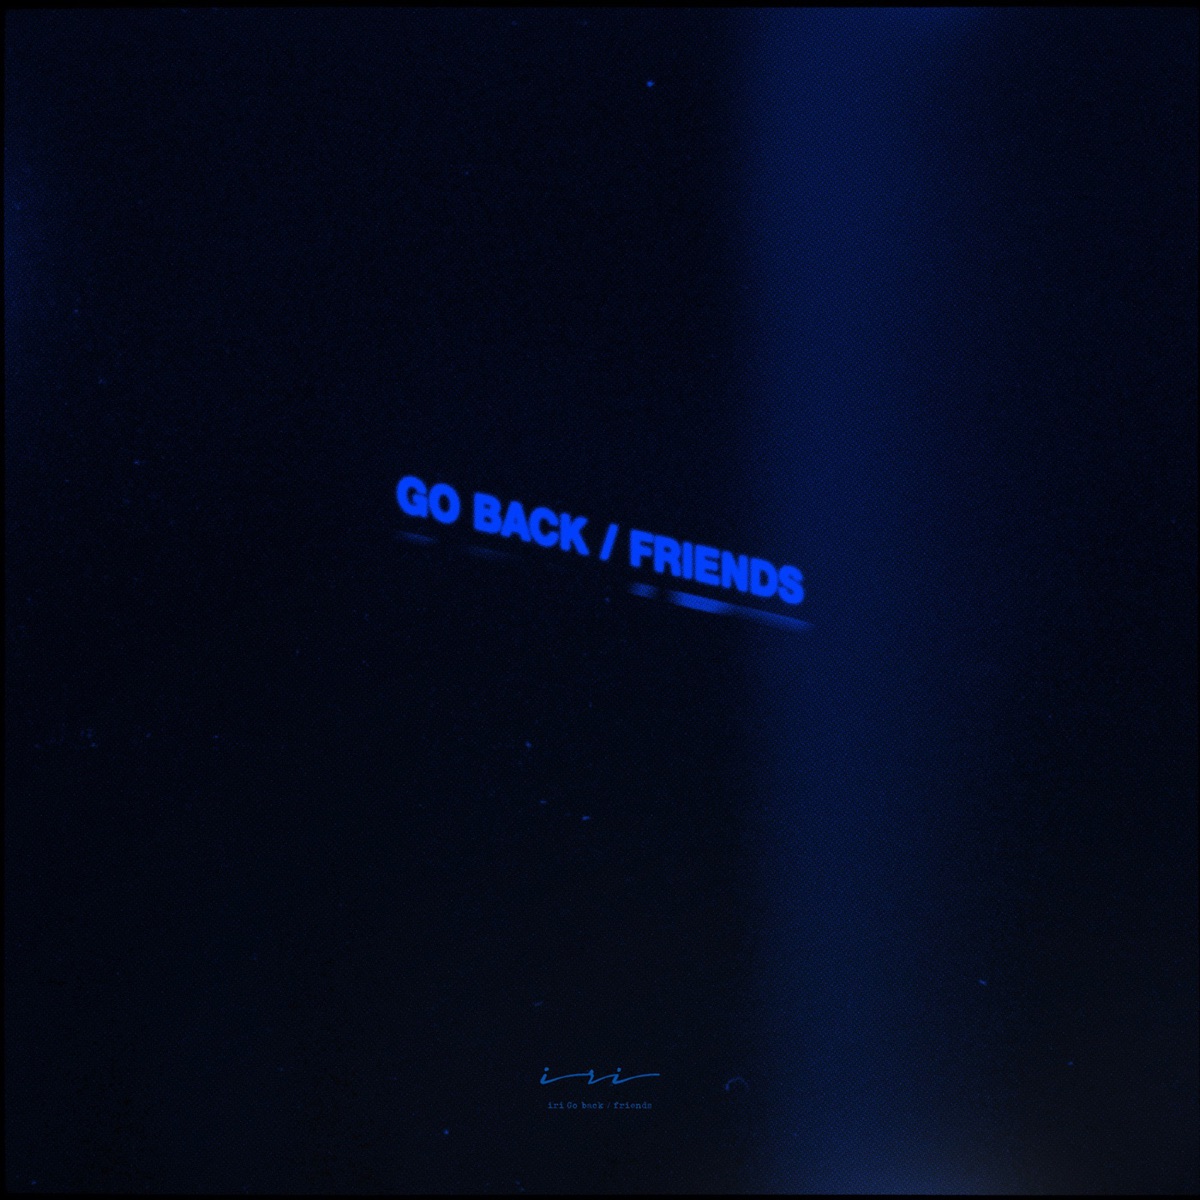 『iri - Go back』収録の『Go back / friends』ジャケット